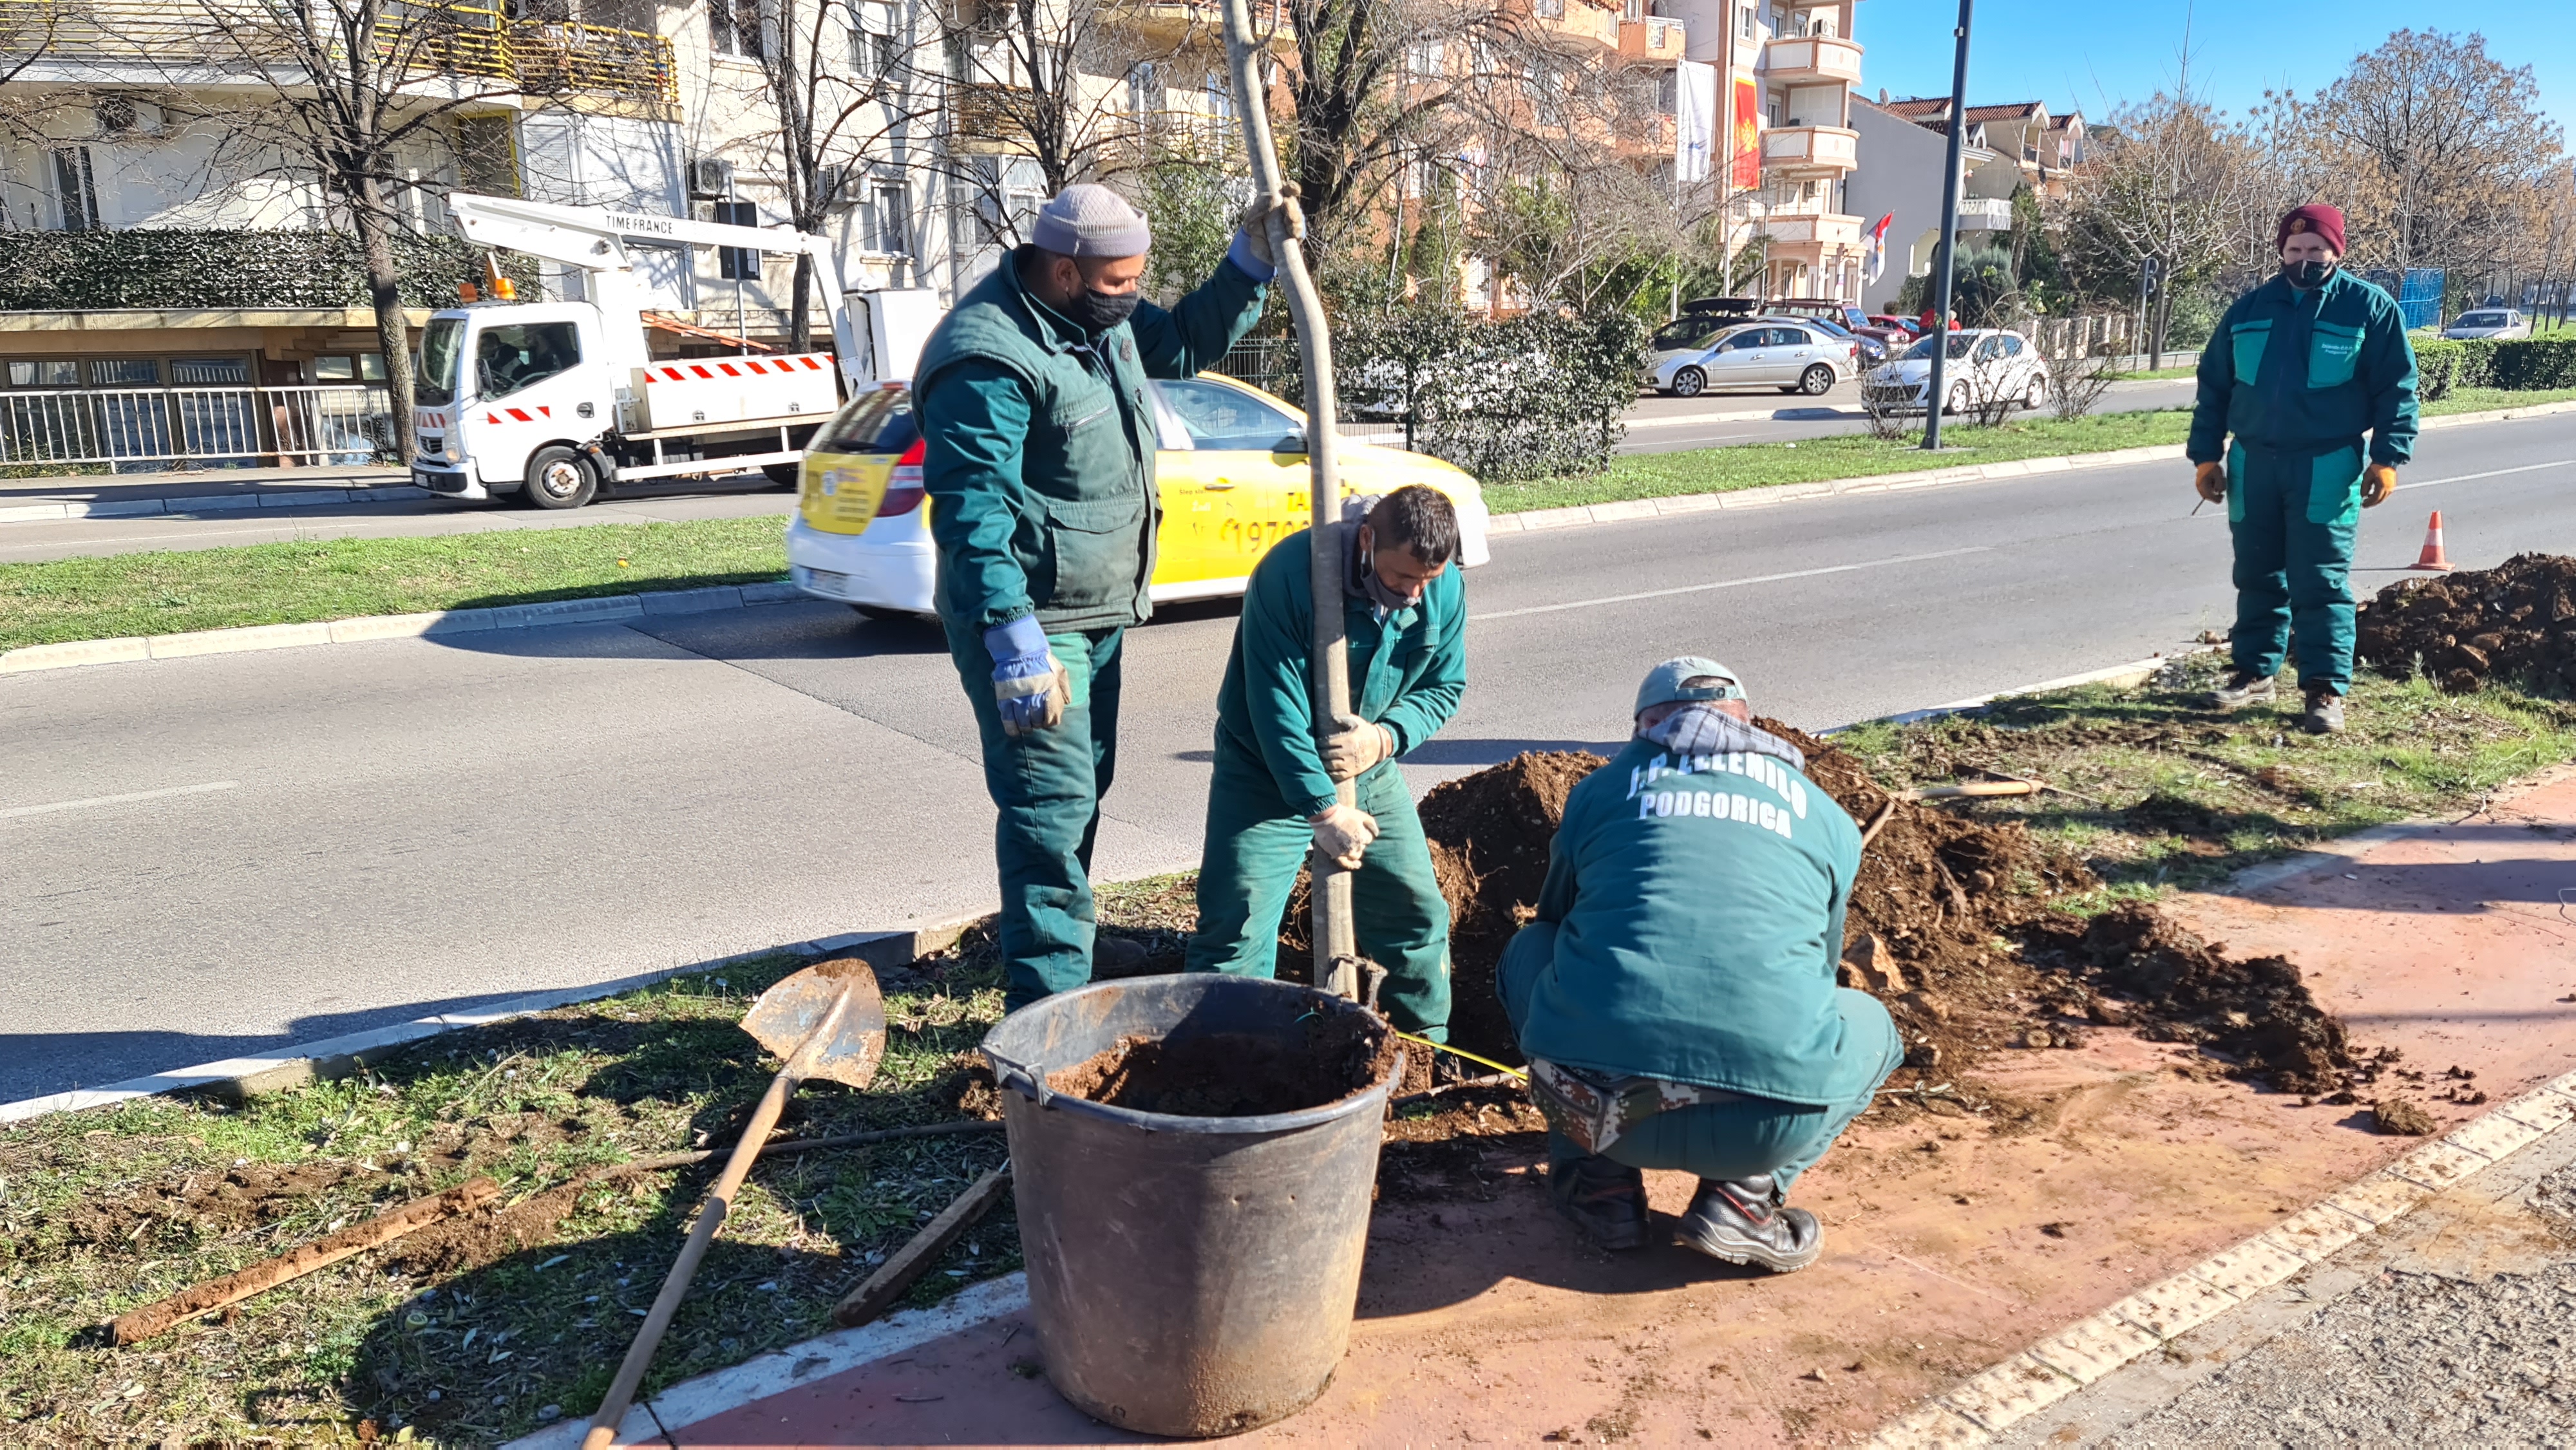 Crnogorskih Serdara Boulevard gets a new tree line of hackberries